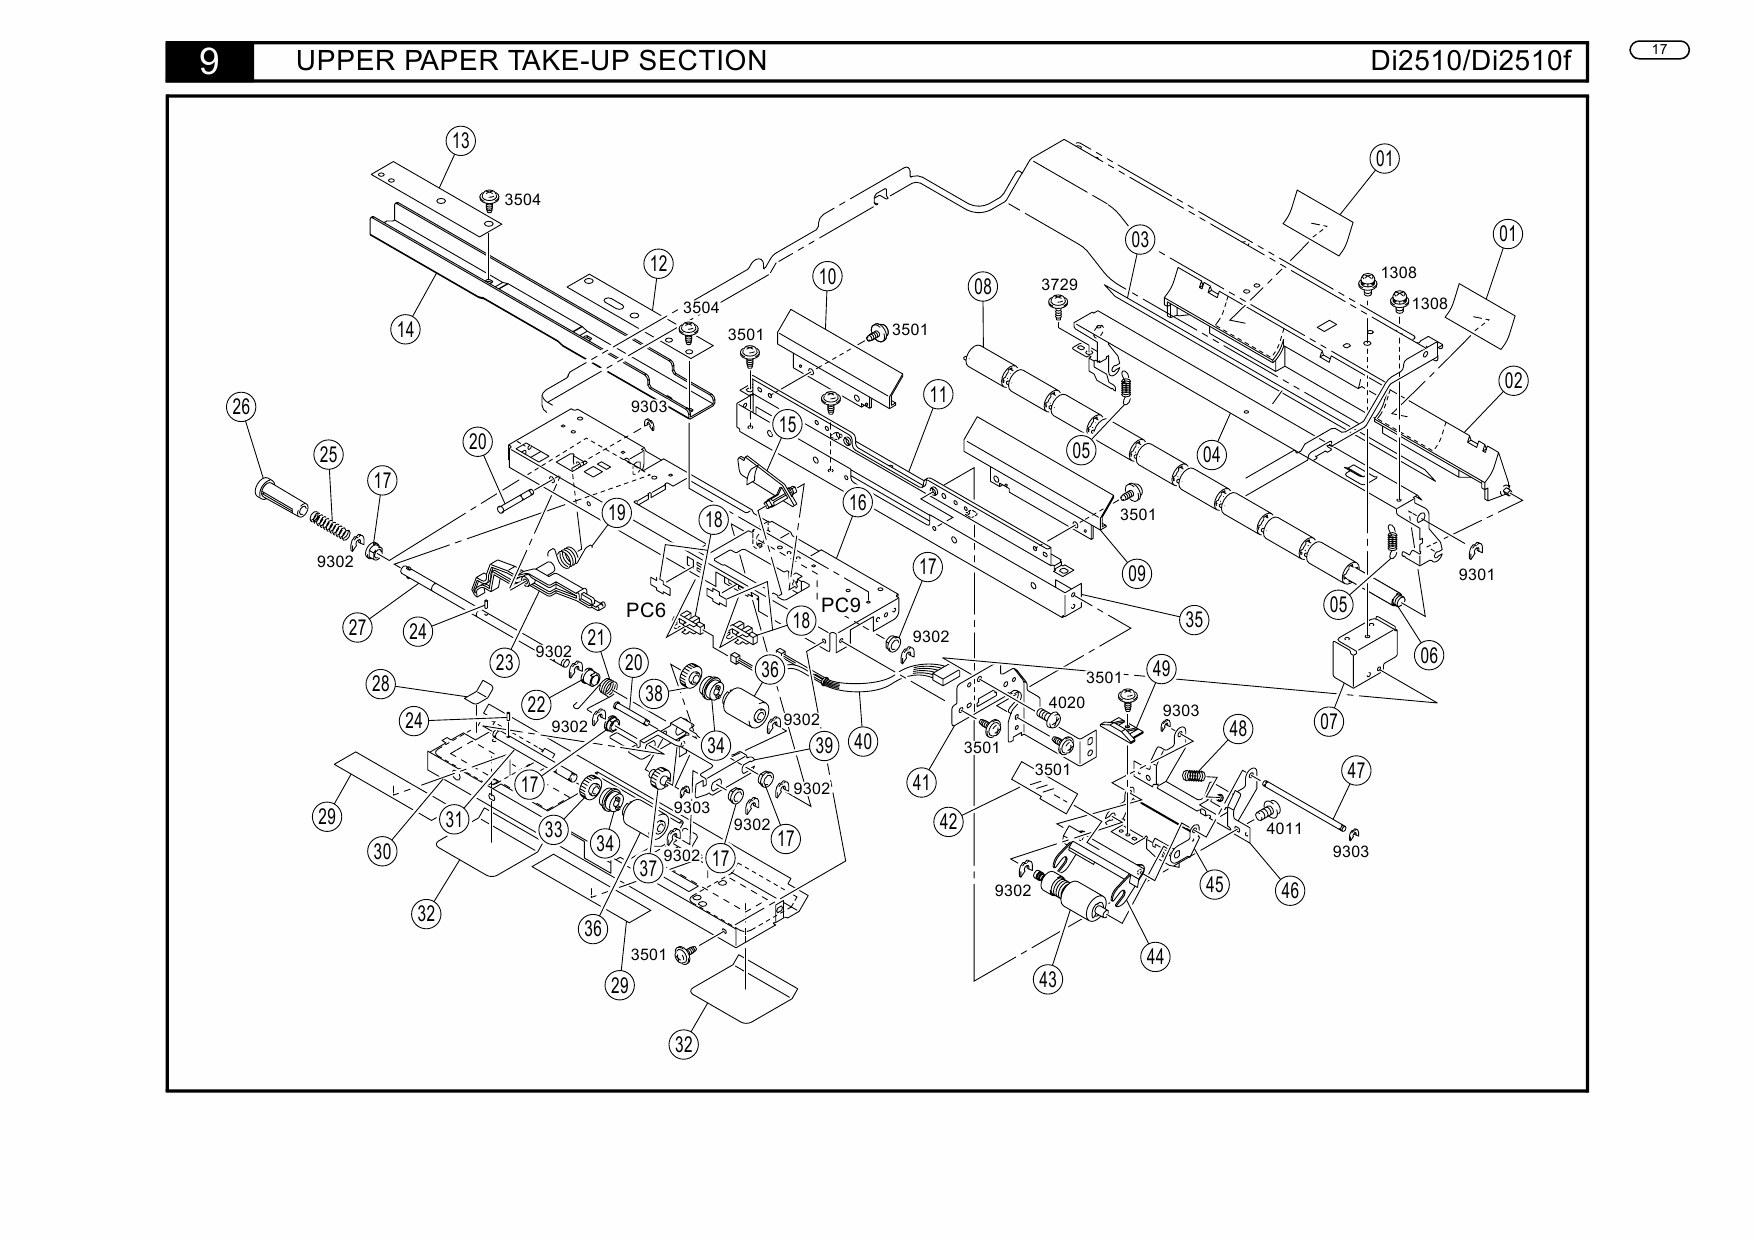 Konica-Minolta MINOLTA Di2510 Di2510f Parts Manual-4